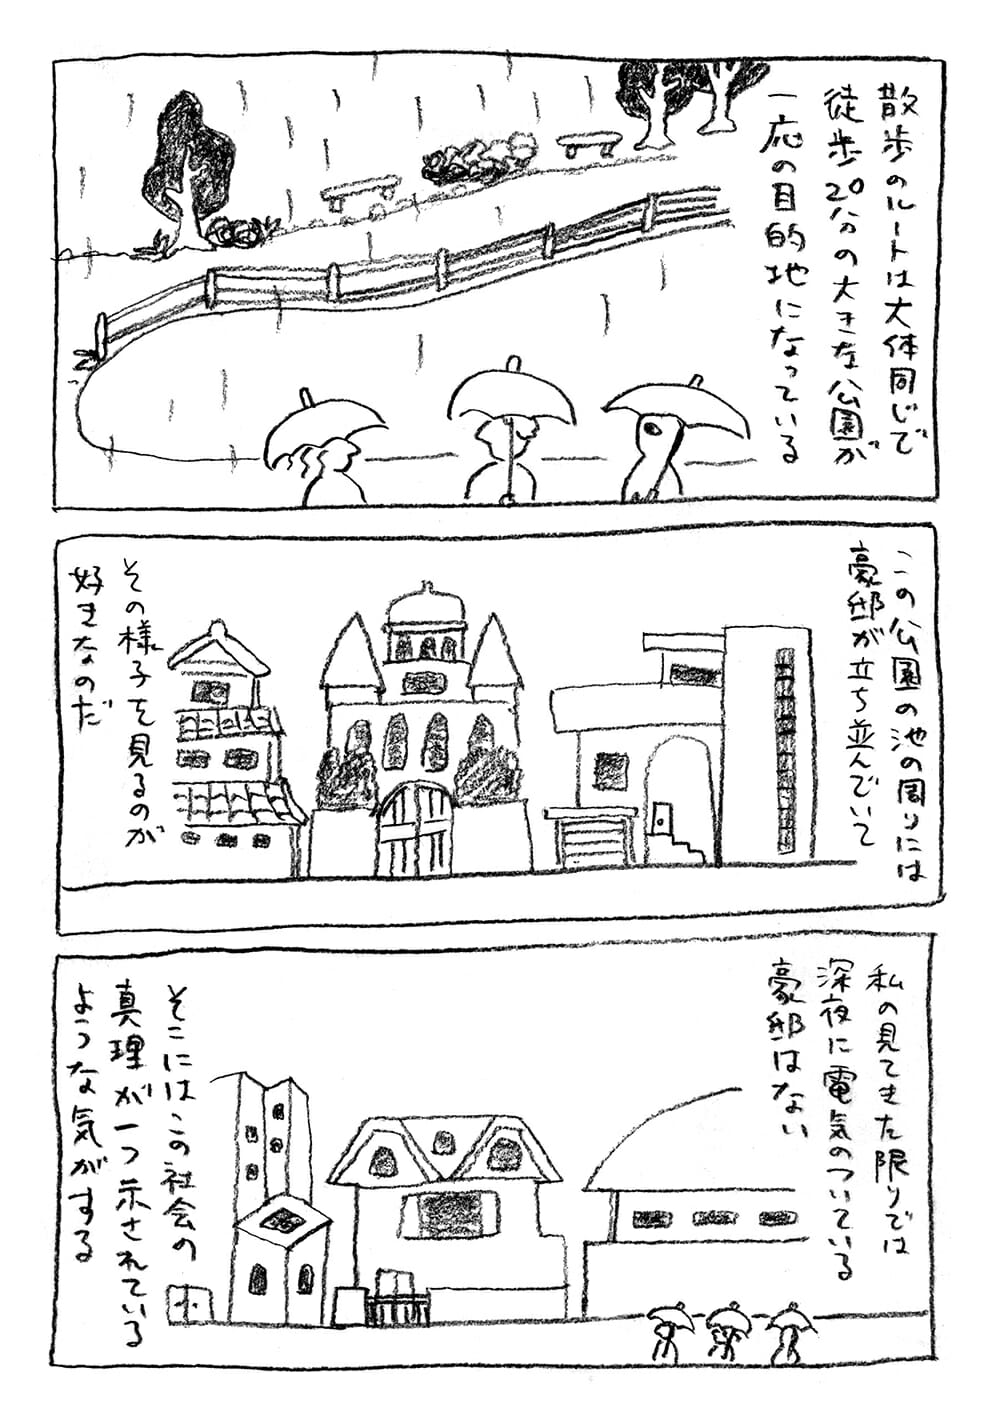 トーチwebの山田さんによる漫画『近況』